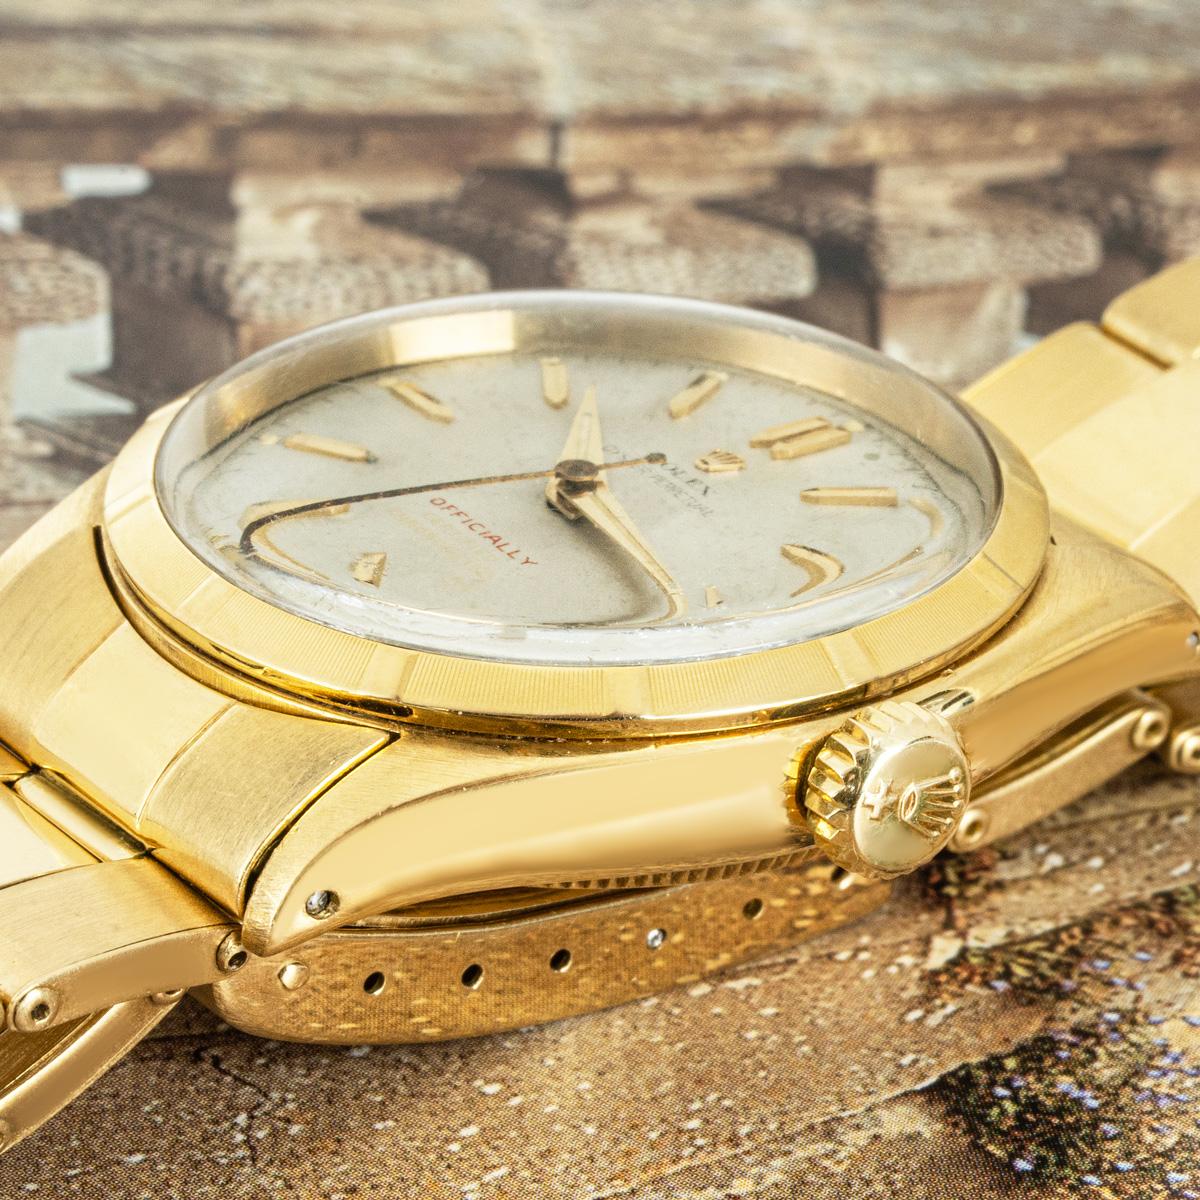 Rare montre-bracelet Oyster Perpetual en or jaune de Rolex. Elle présente un cadran argenté avec l'inscription distinctive 